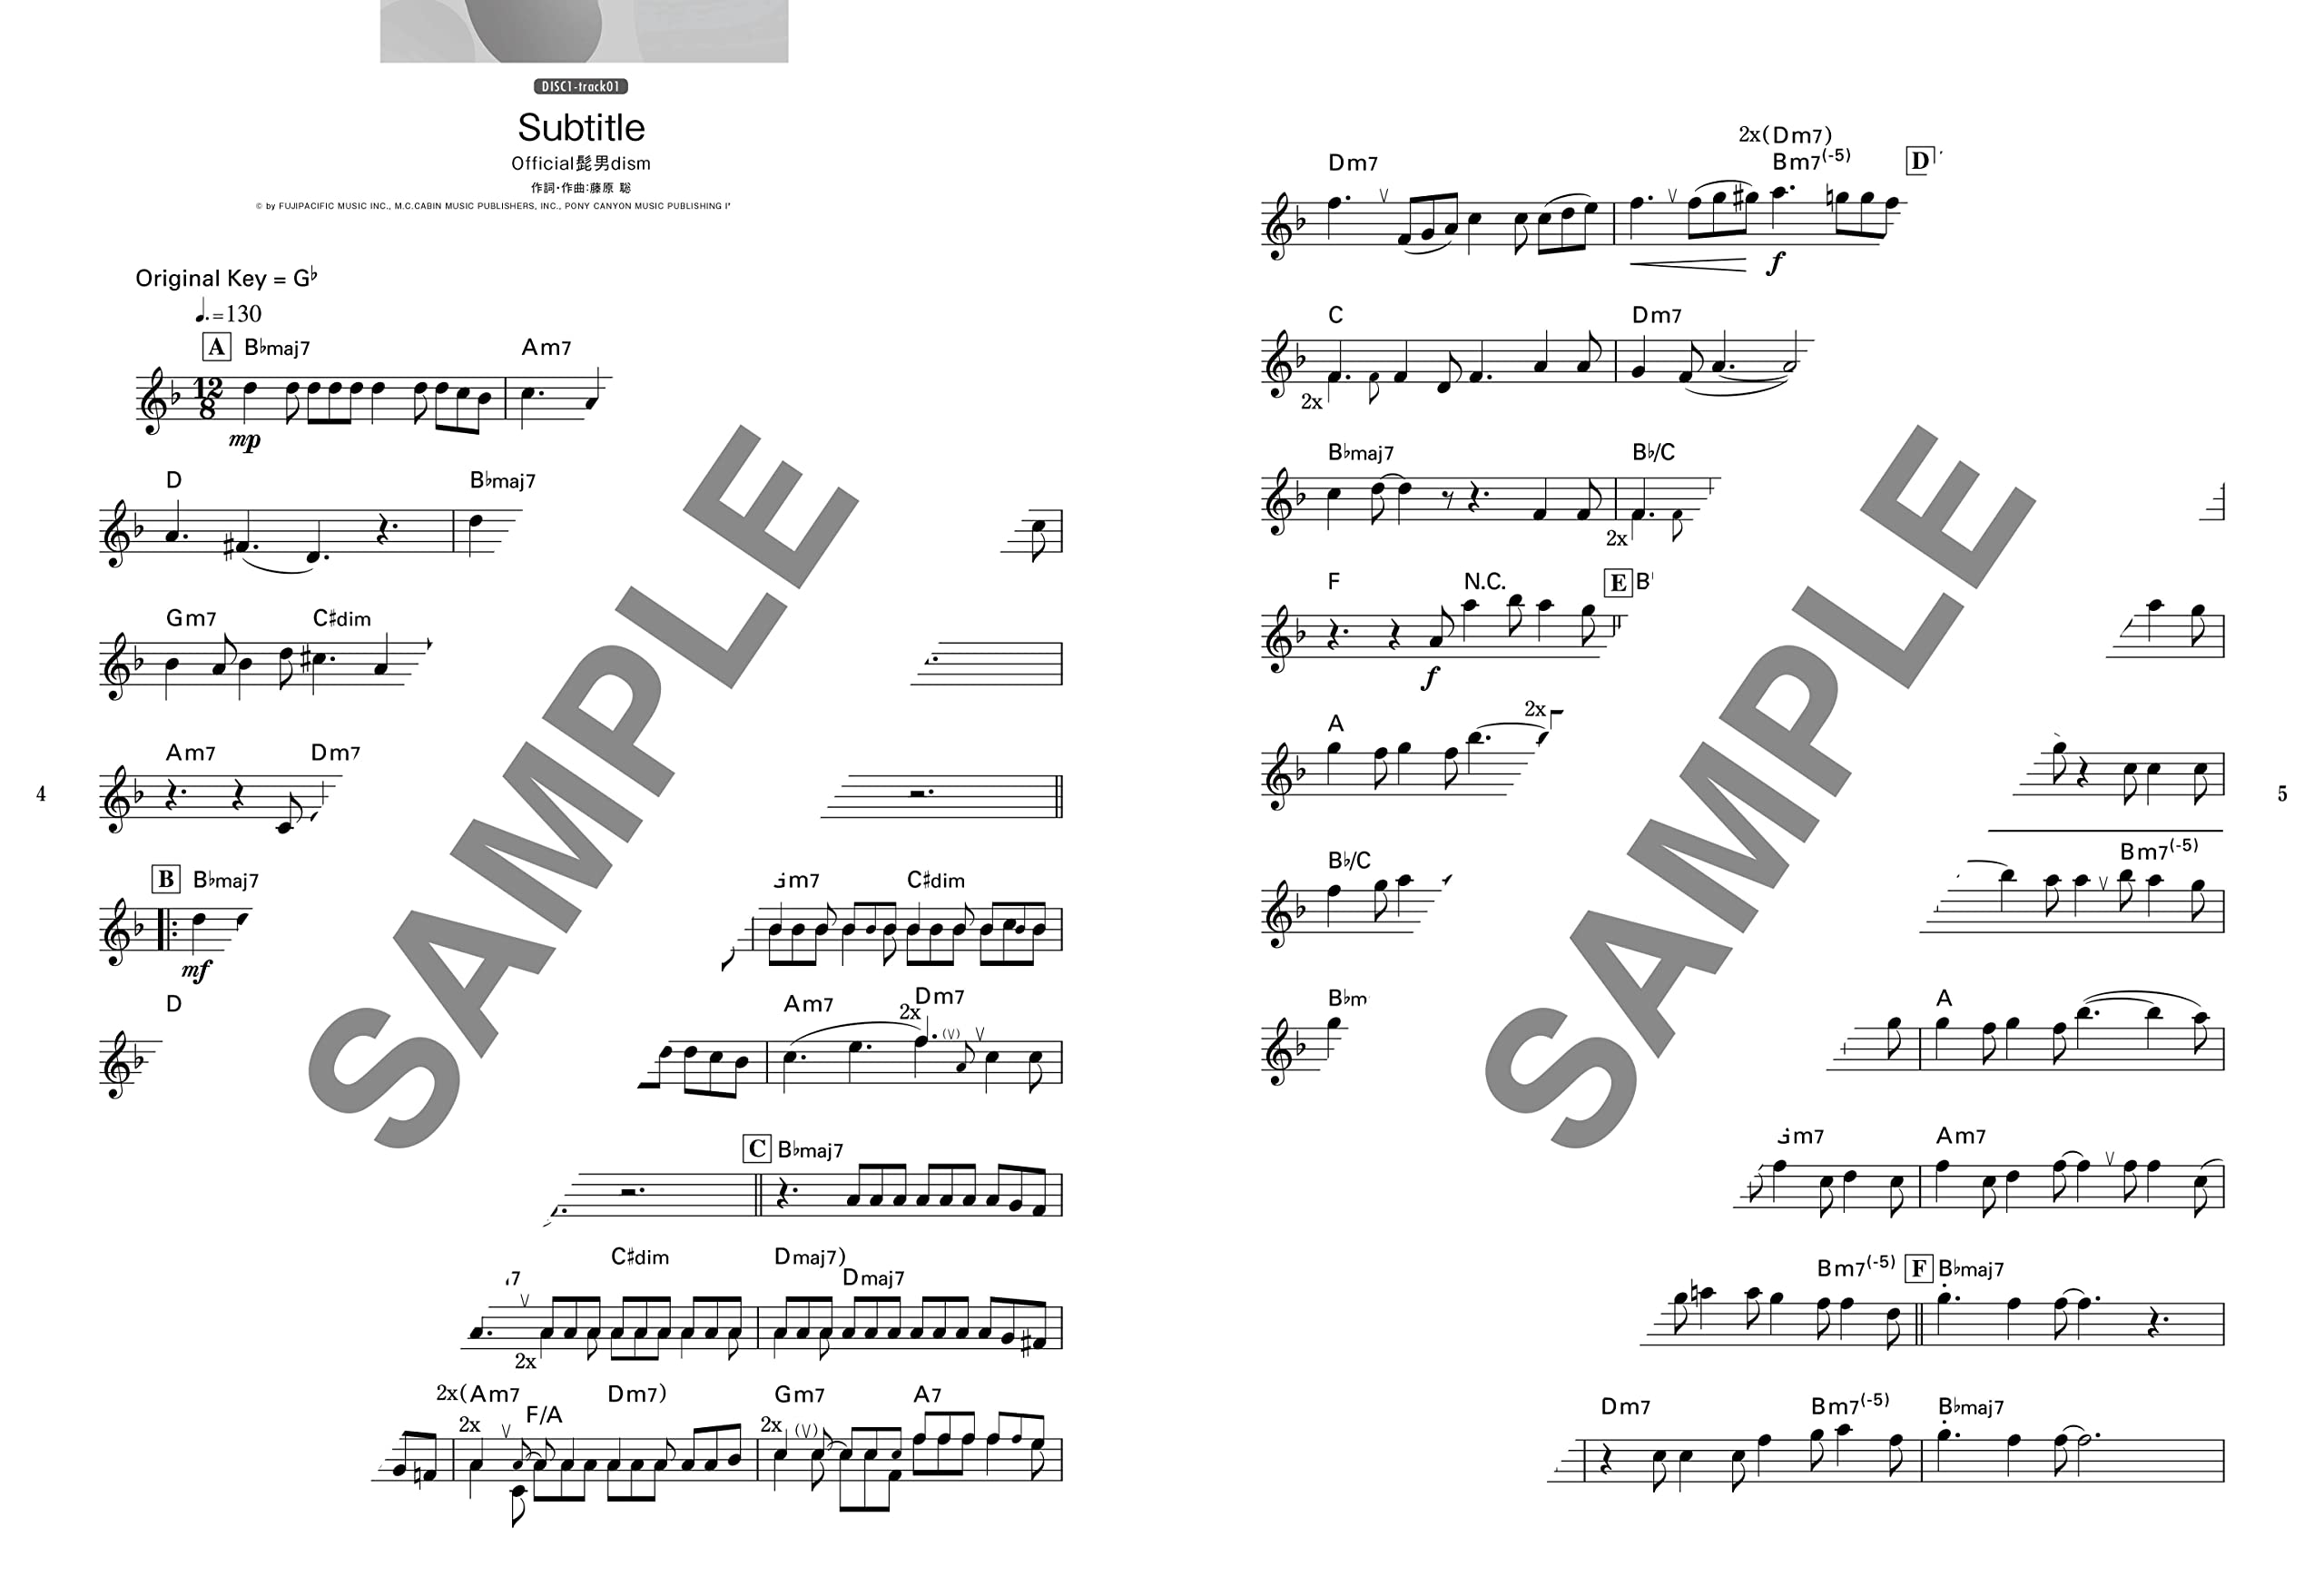 New flute song | Flute sheet music, Sheet music, Flute music